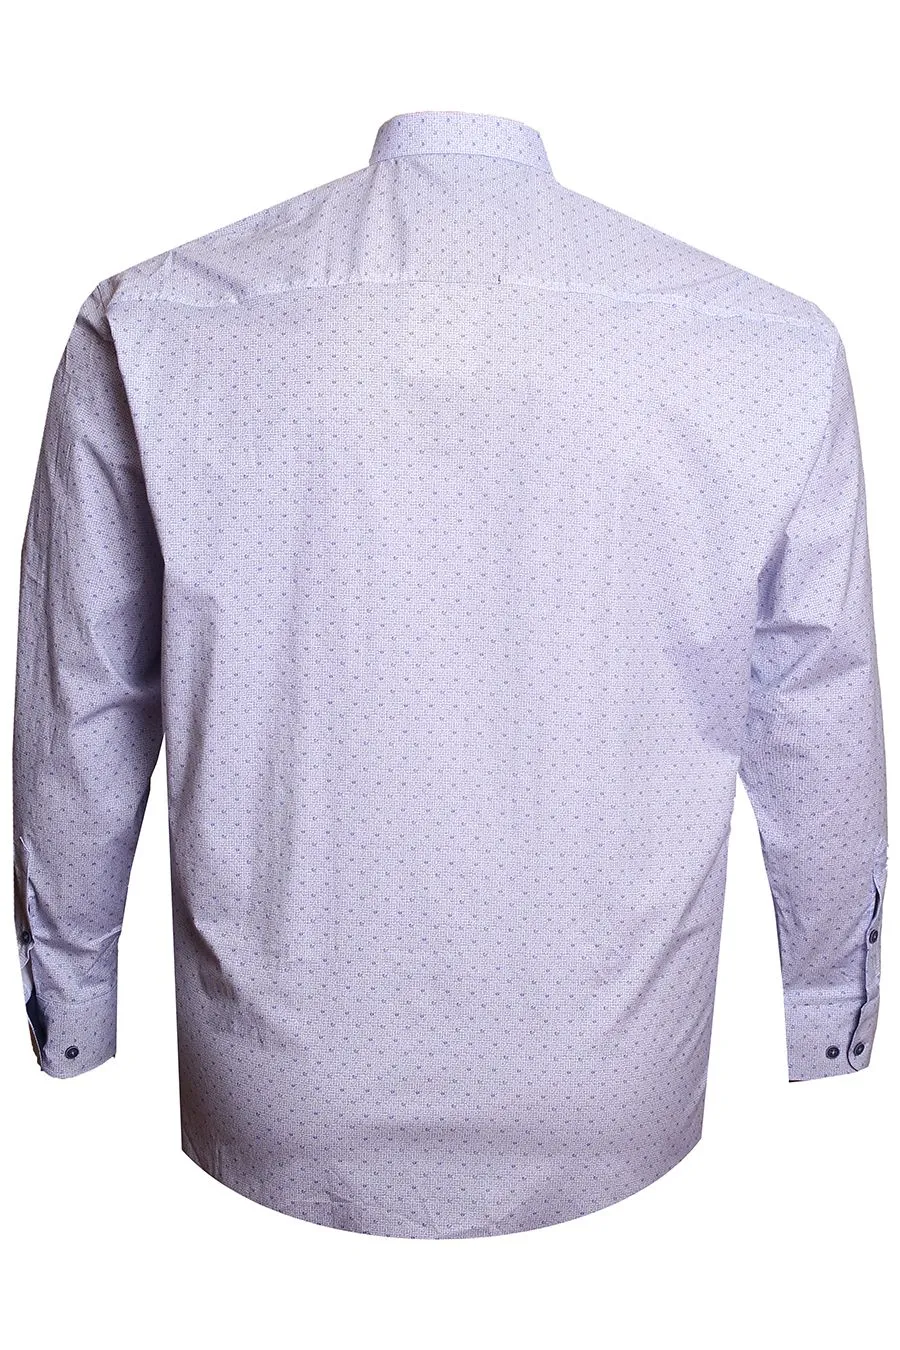 Рубашка Birindelli белая с голубым принтом большого размера